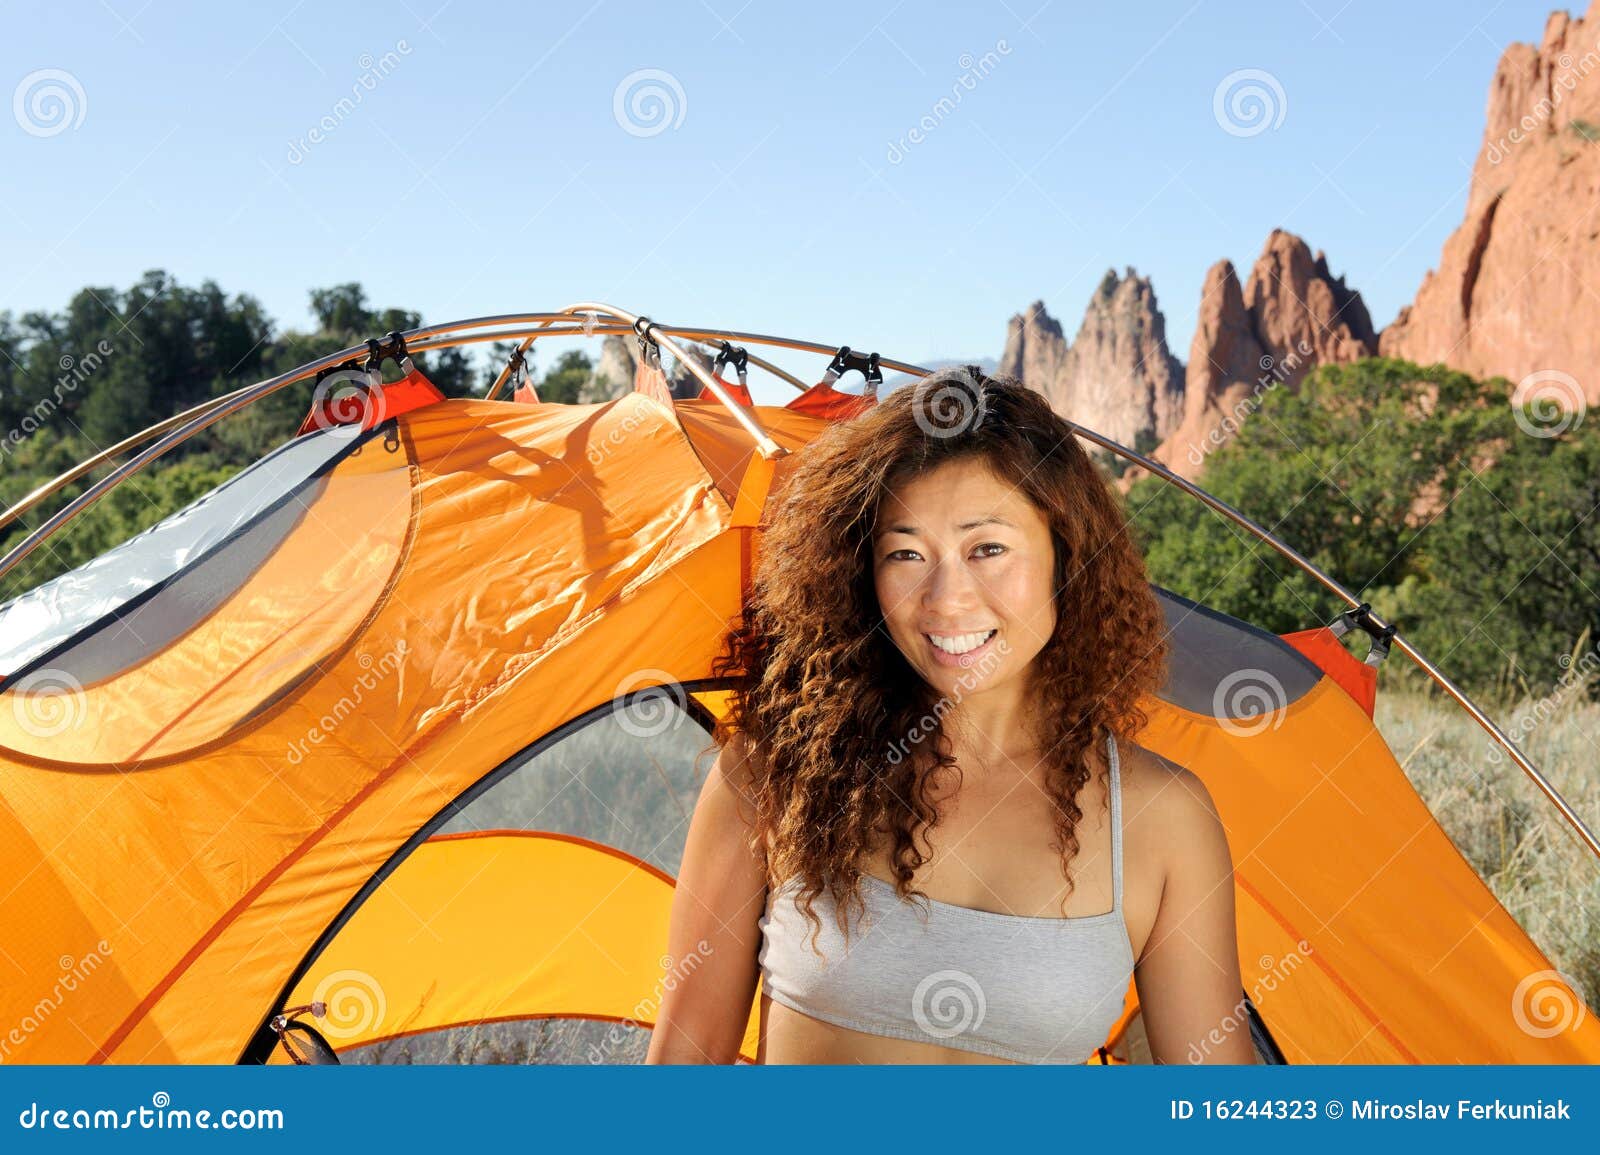 Nude Women Camping